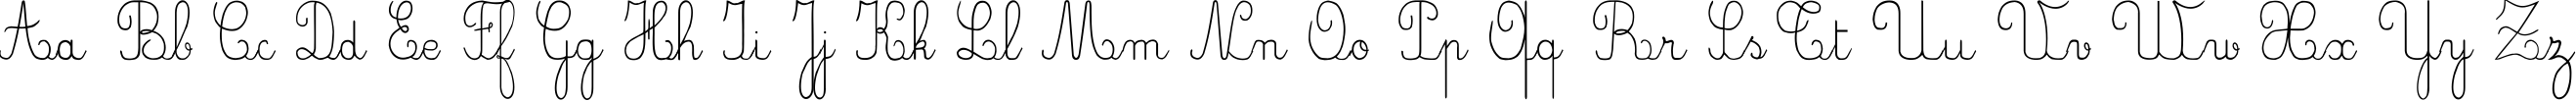 Пример написания английского алфавита шрифтом CrayonE